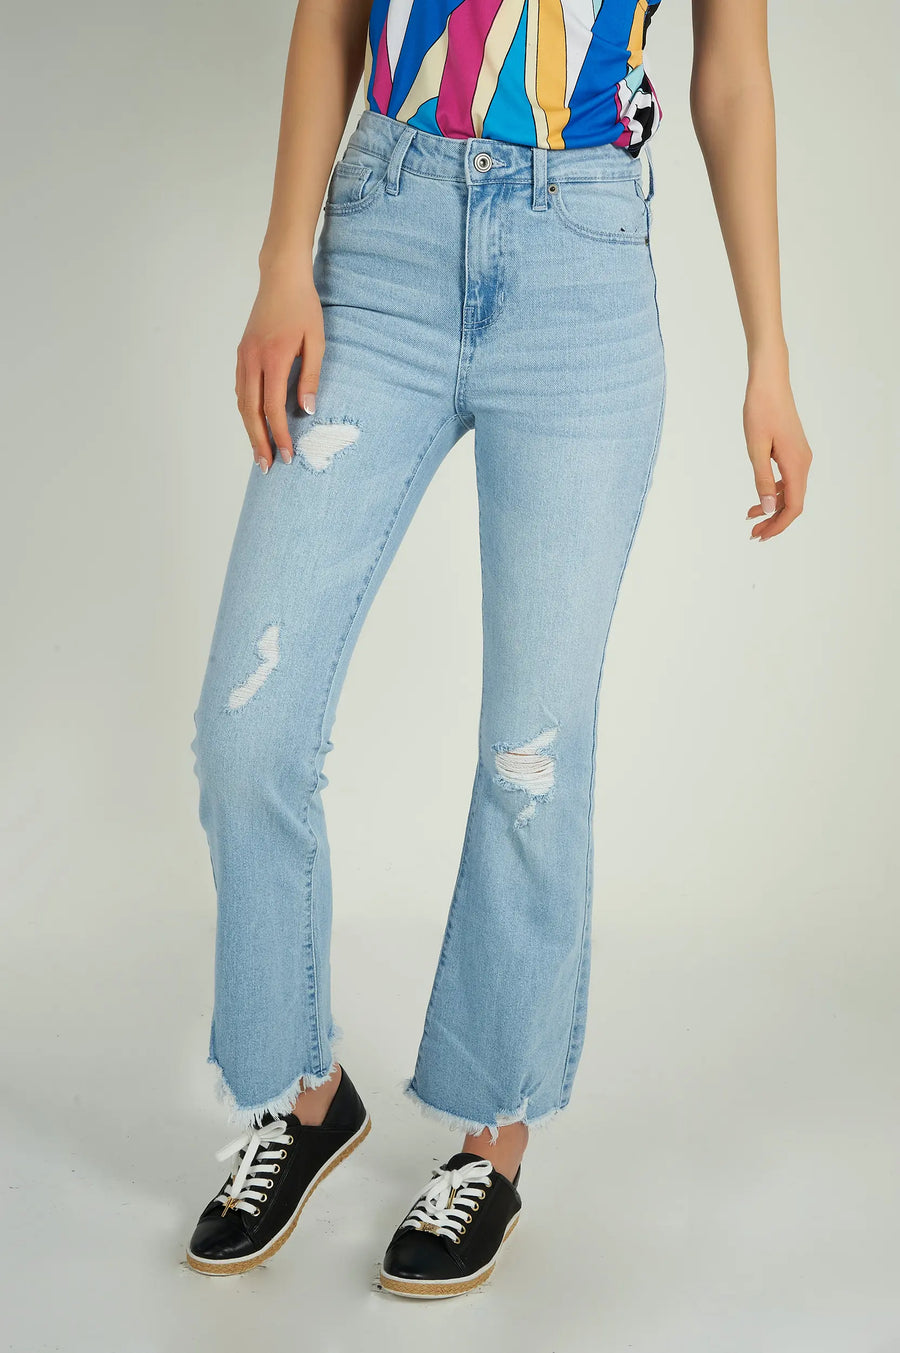 magasinez les jeans pour femme colori collection printemps été - shop women's jeans from cypresslapband spring summer collection